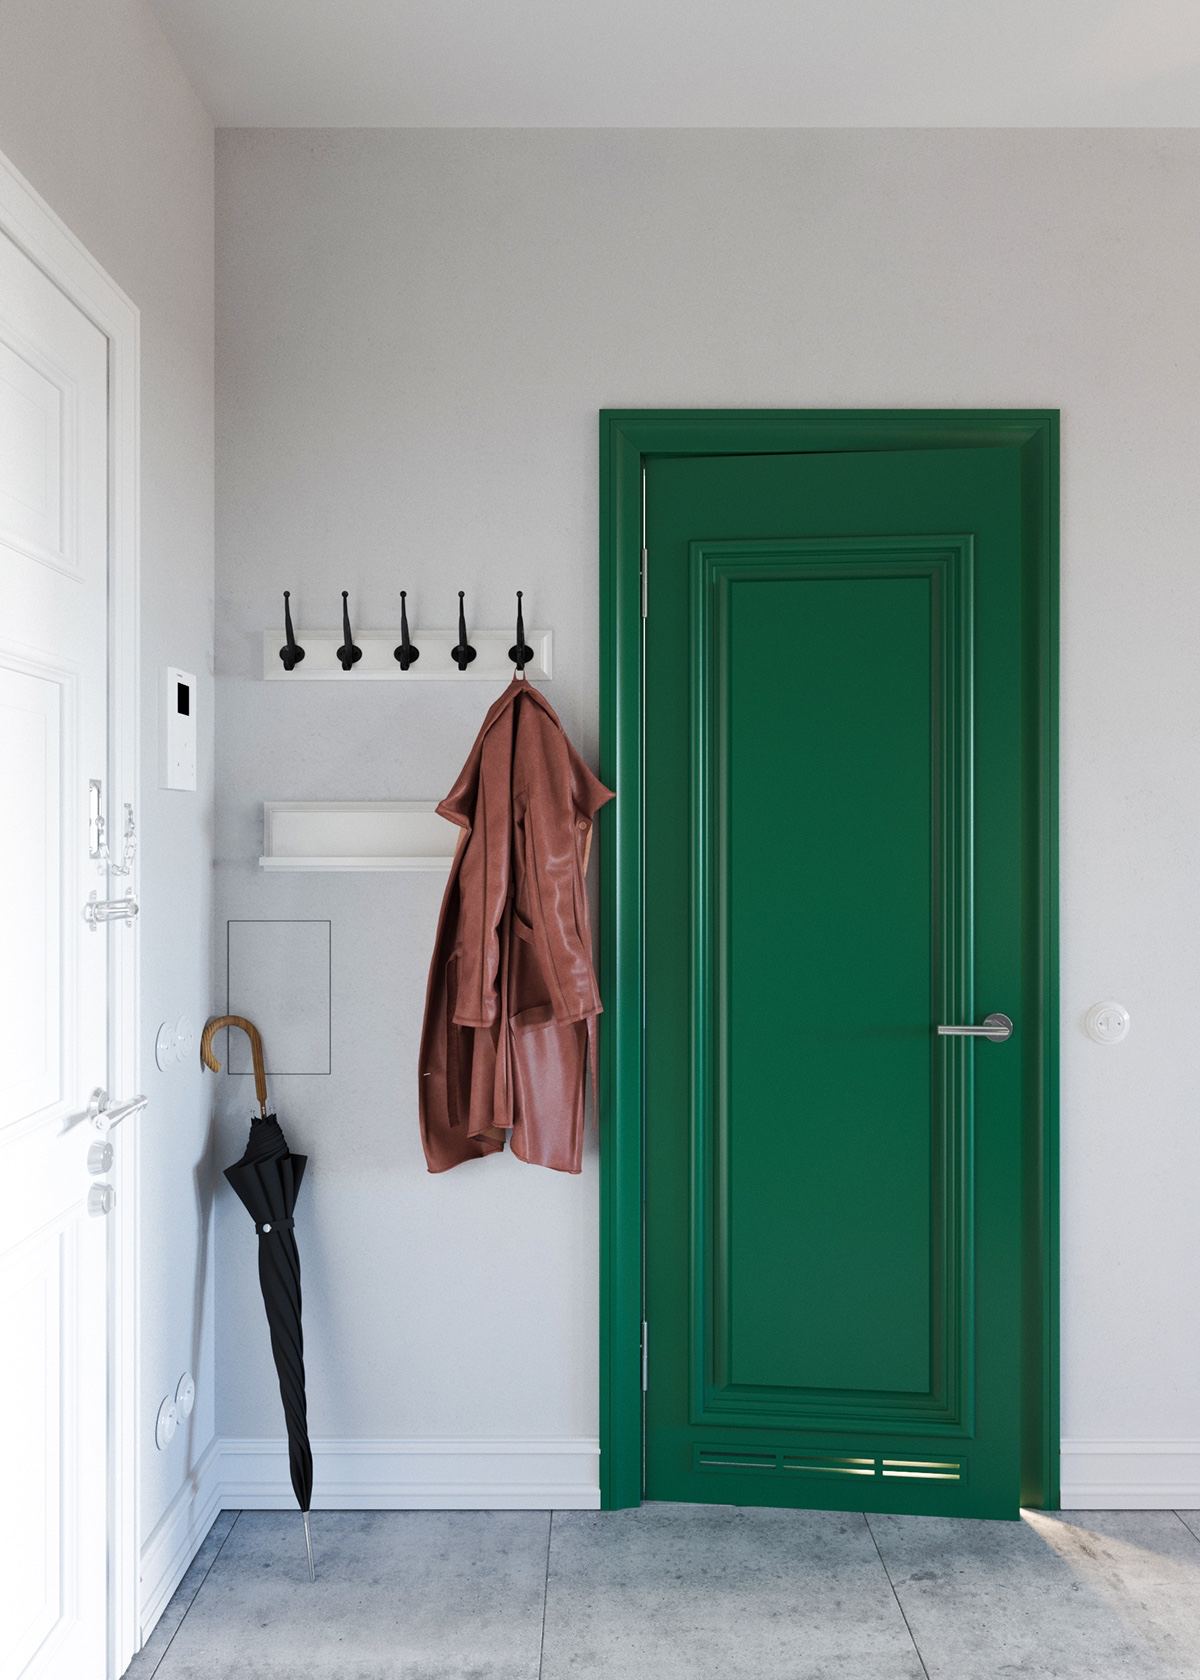 Claves_para_crear_contrastes_de_color_en_la_decoración_espacio_recibidor_unique-jade-green-doors-interior-design-min